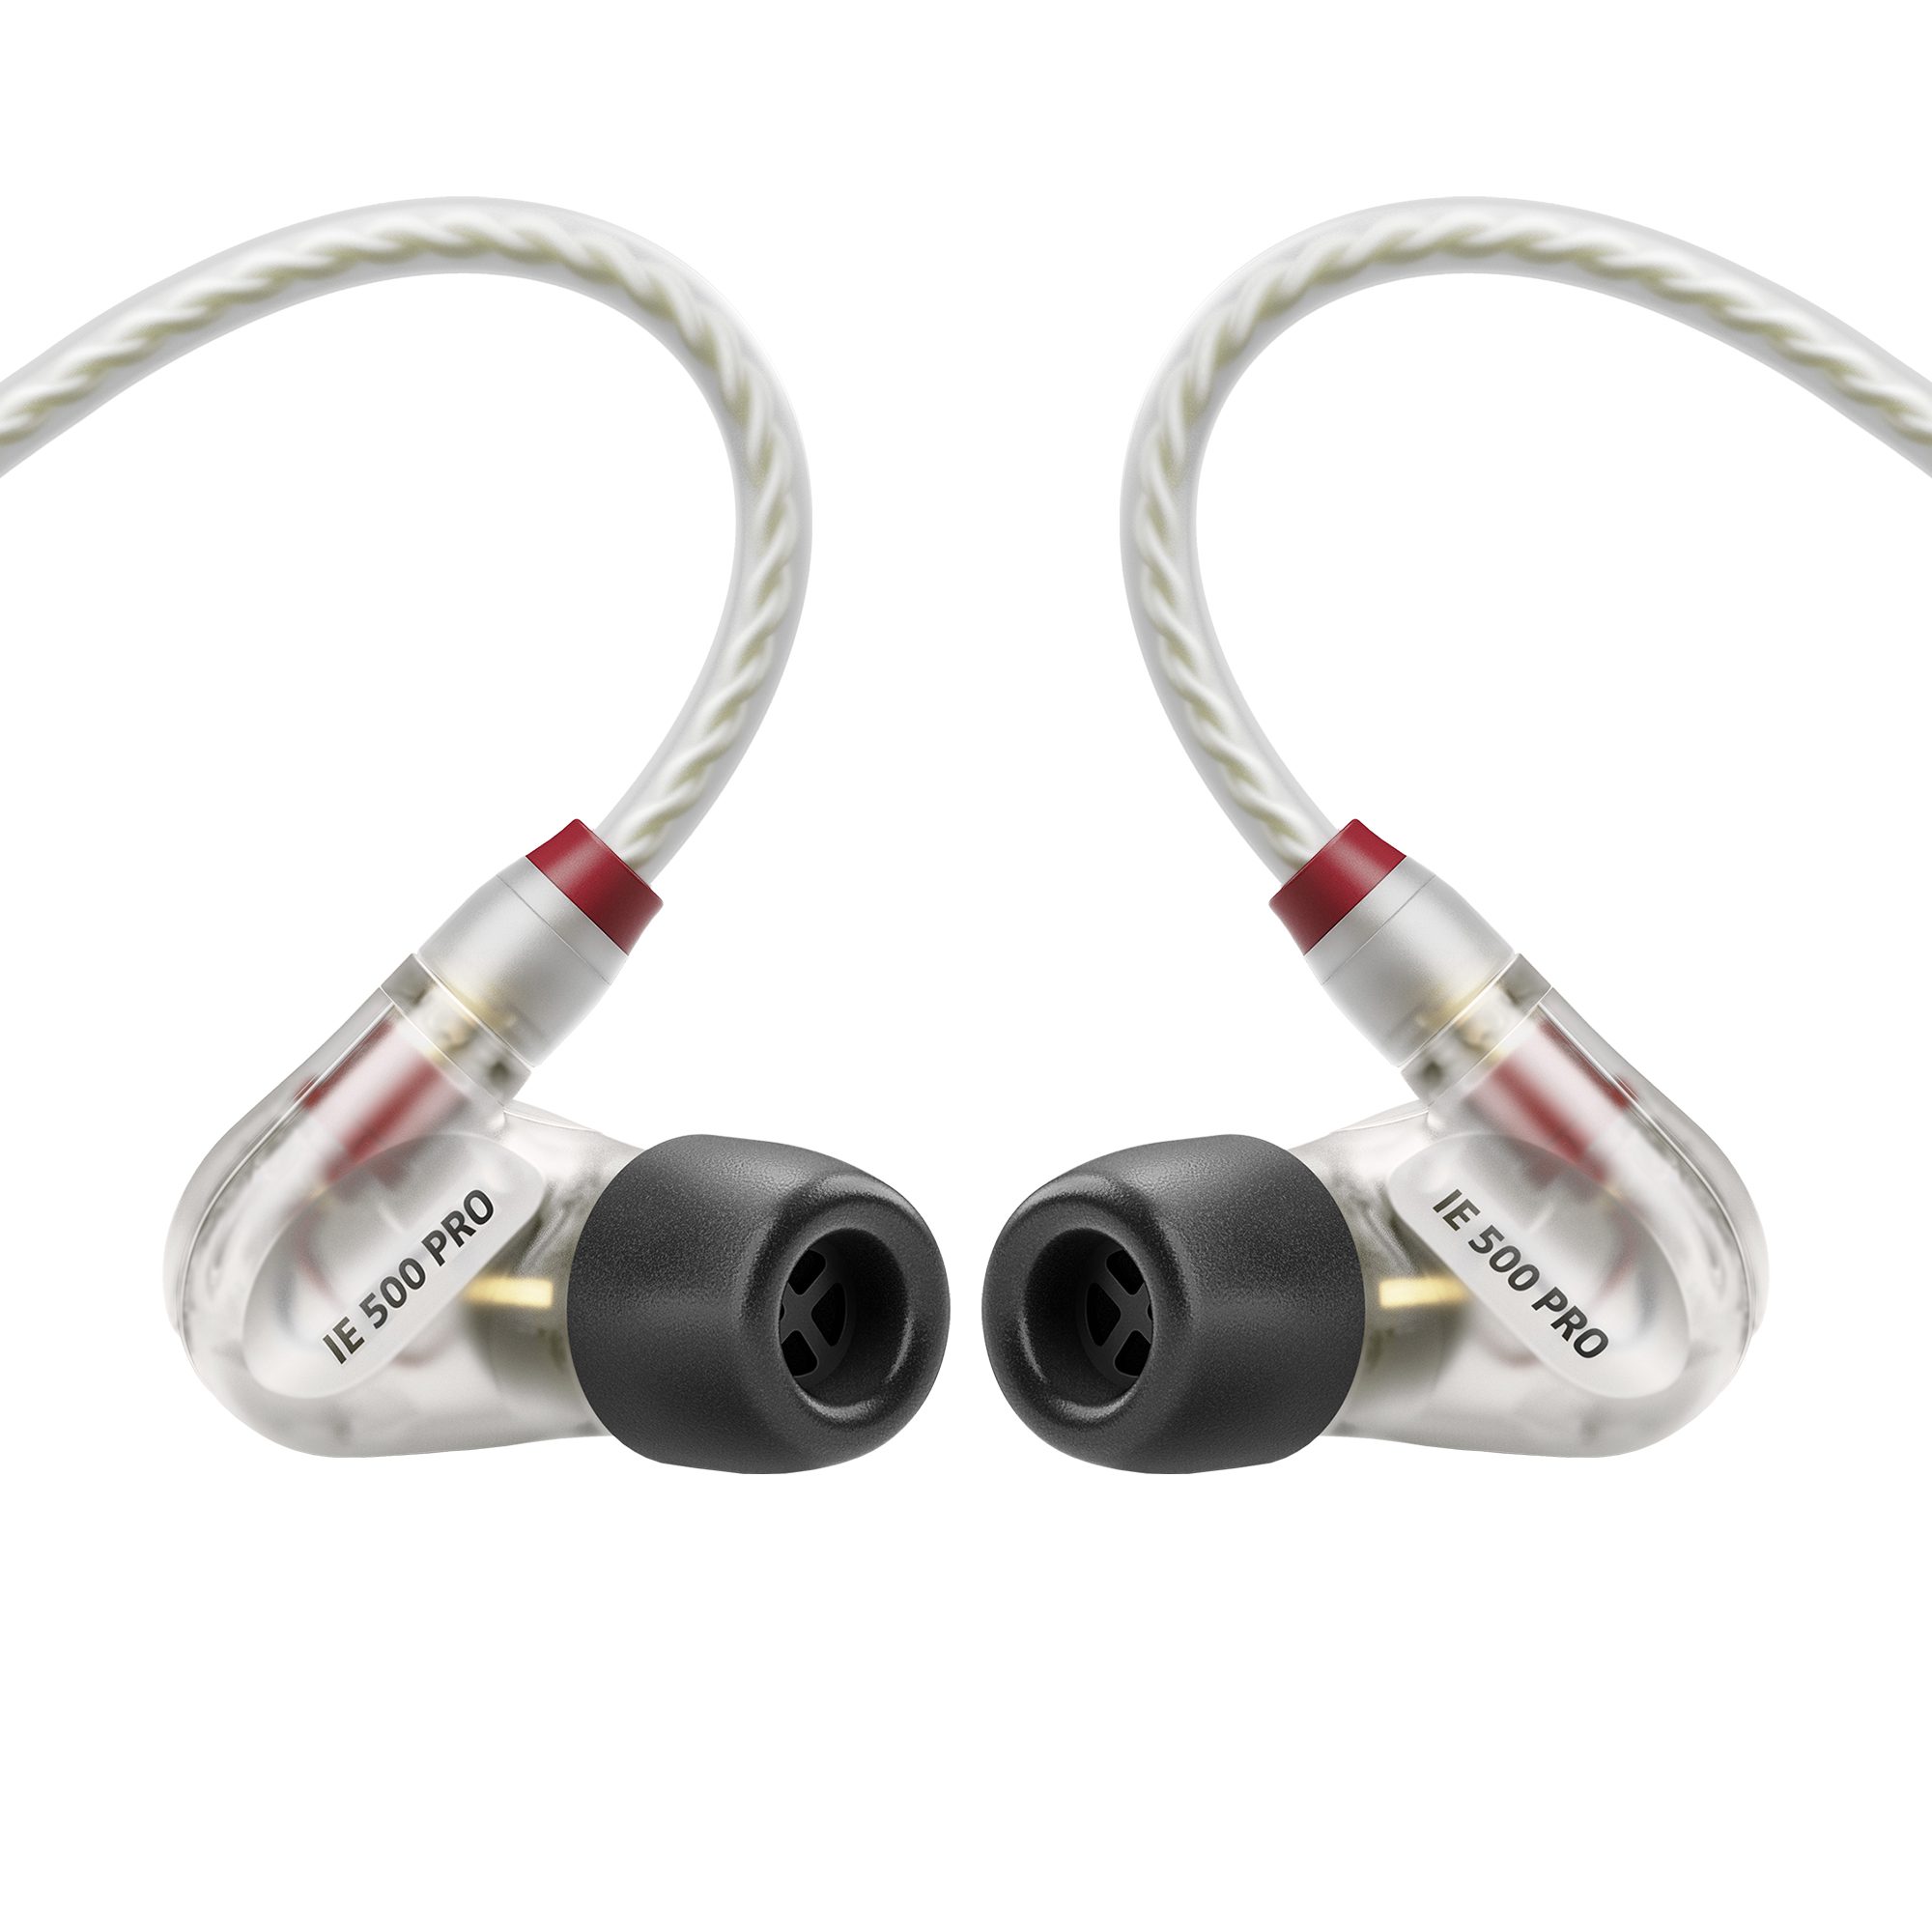 Sennheiser IE 500 Pro Review | headphonecheck.com